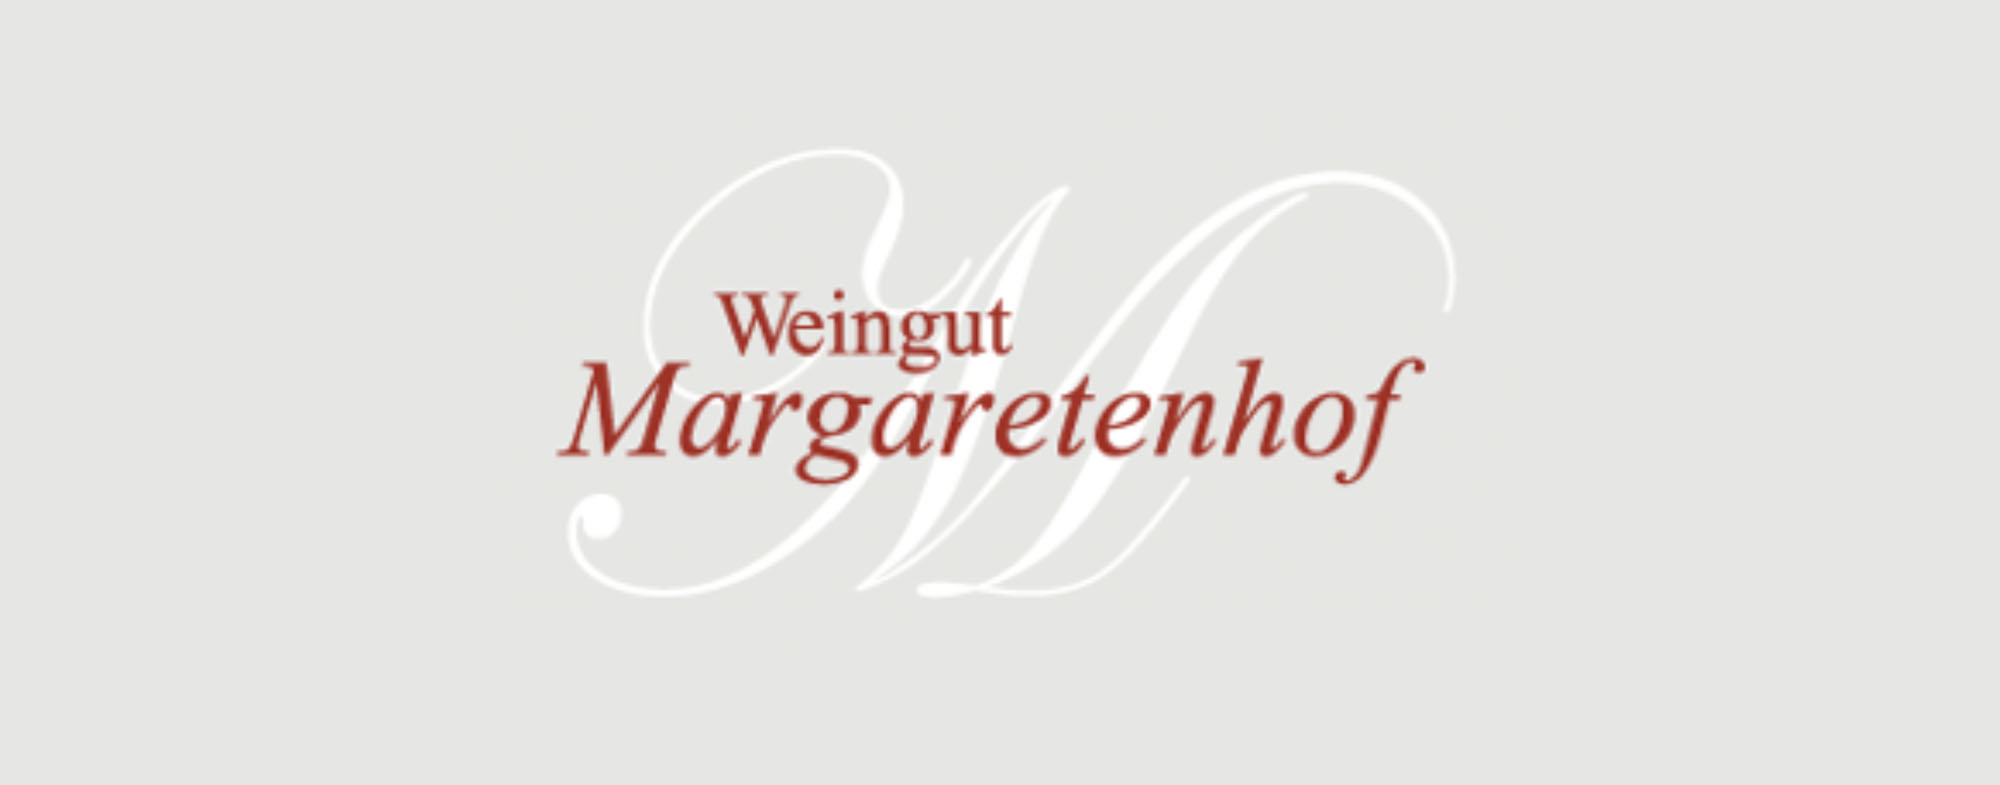 Weingut Margarethenhof